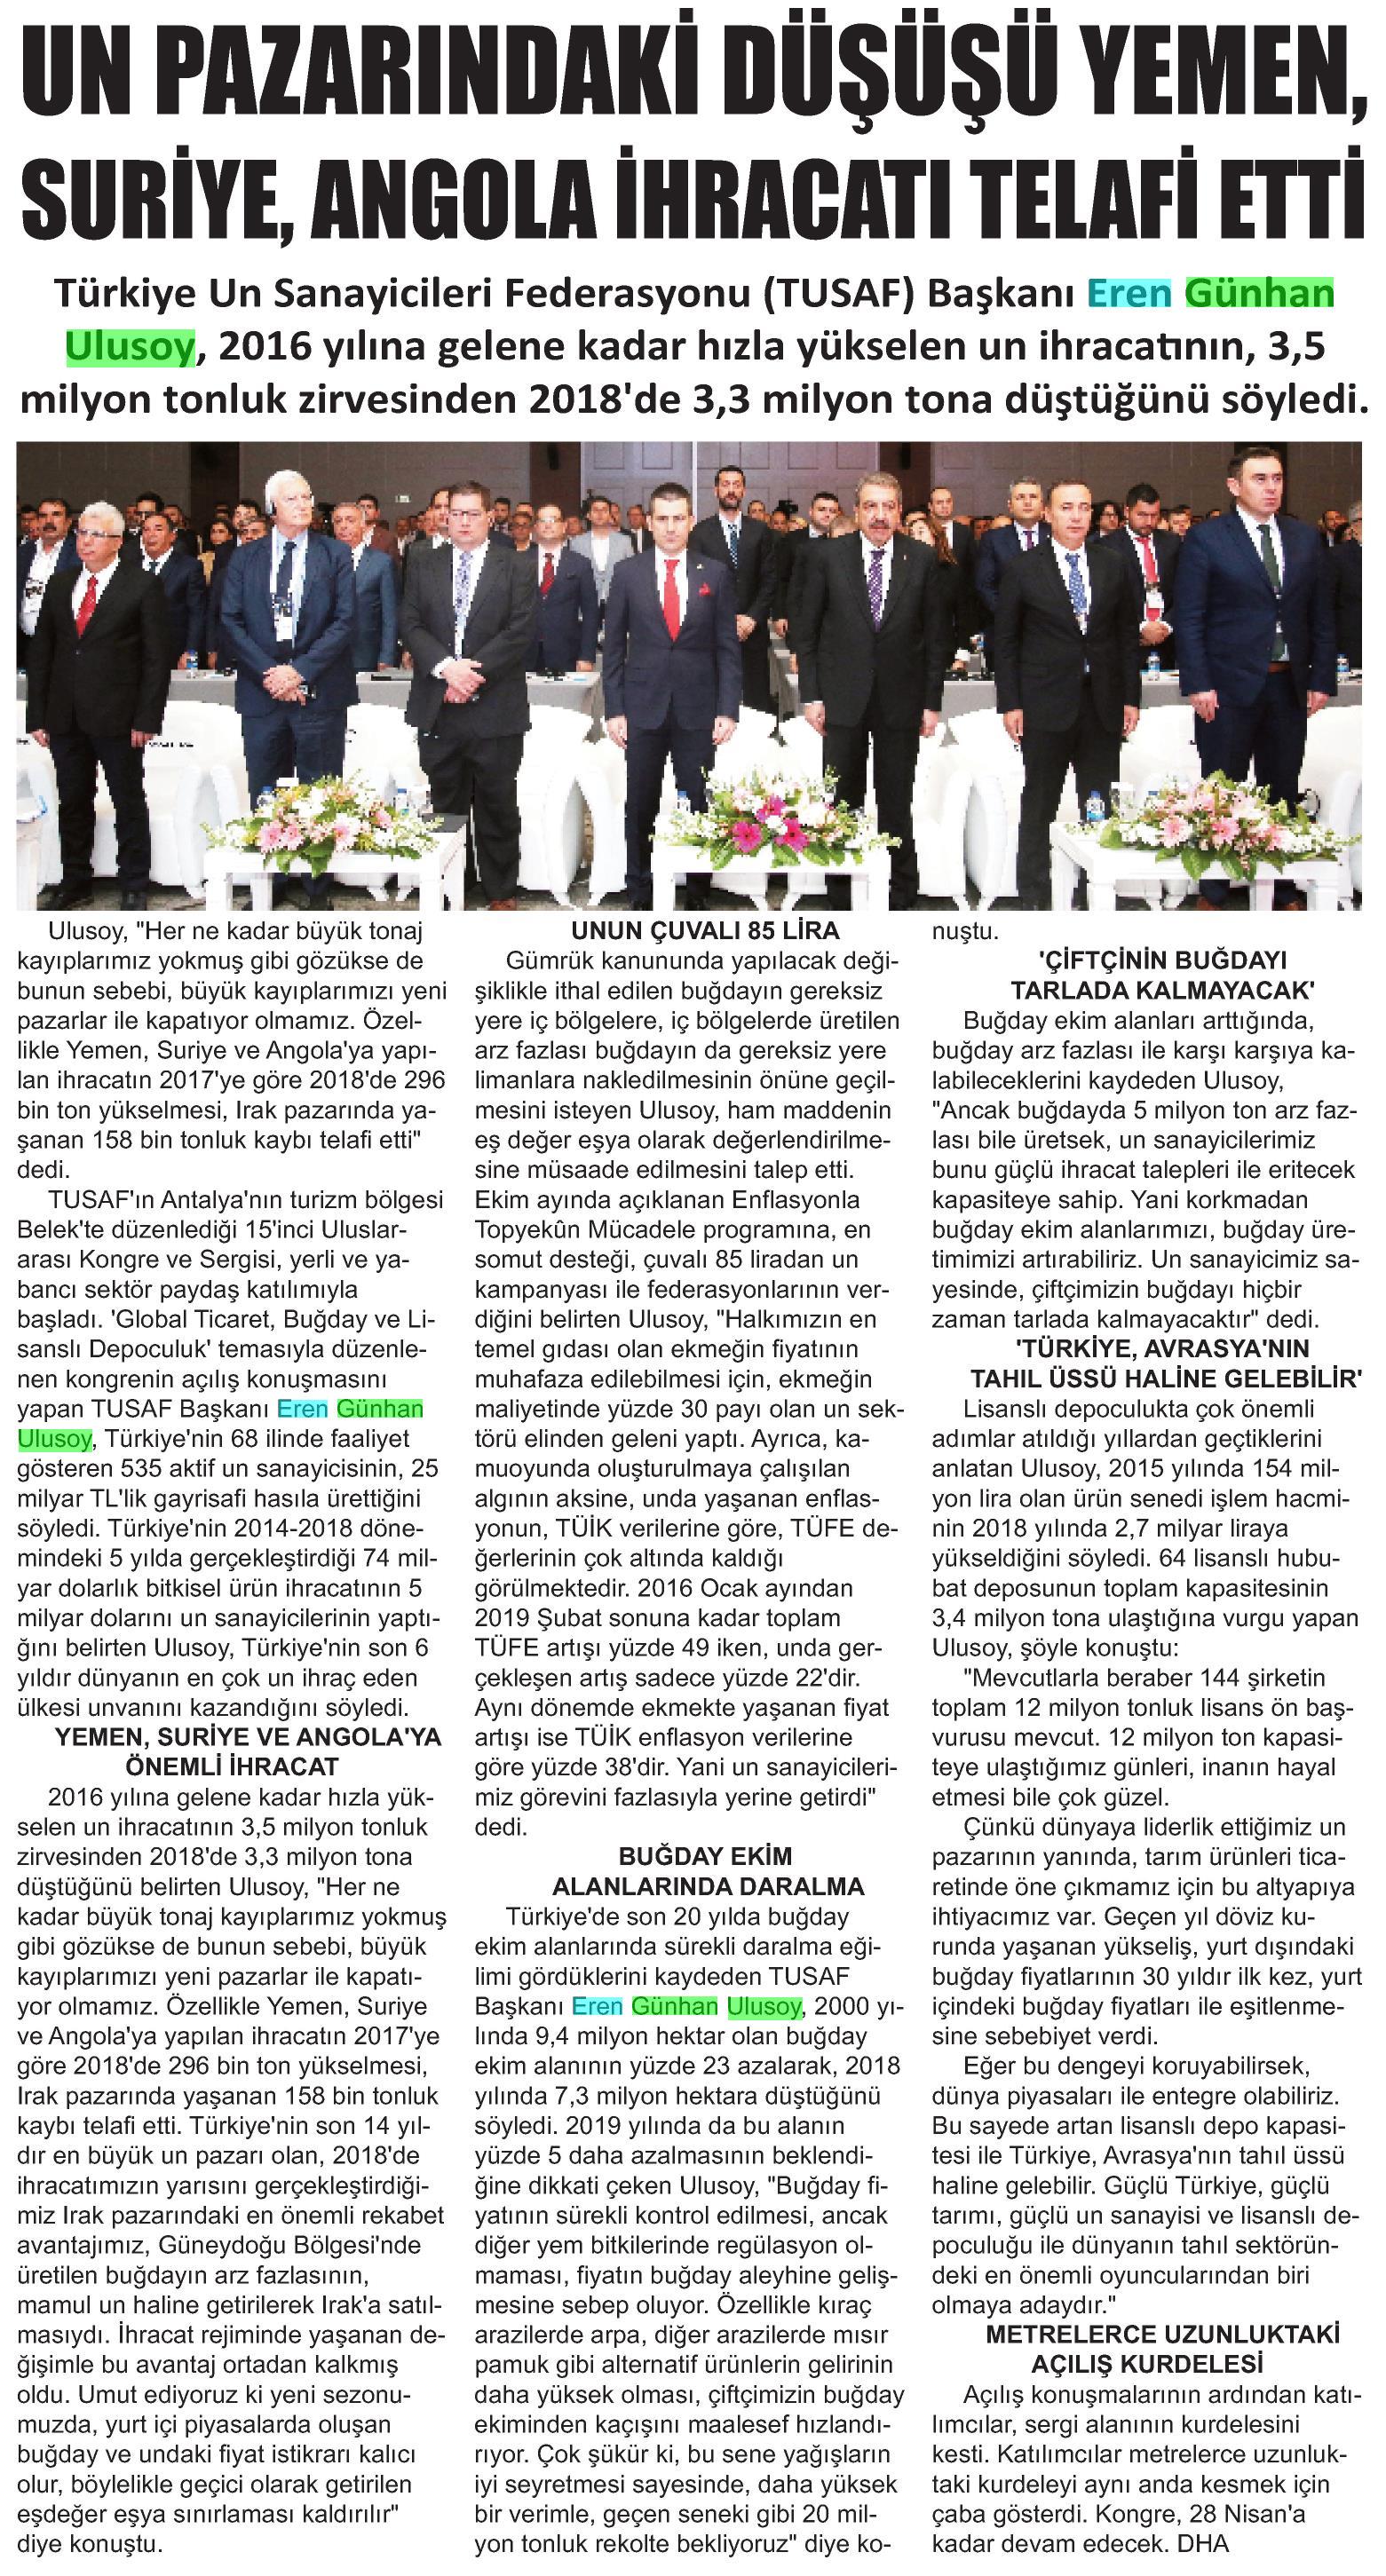 TUSAF A Gazetesi 2. 29.04.2019.jpeg